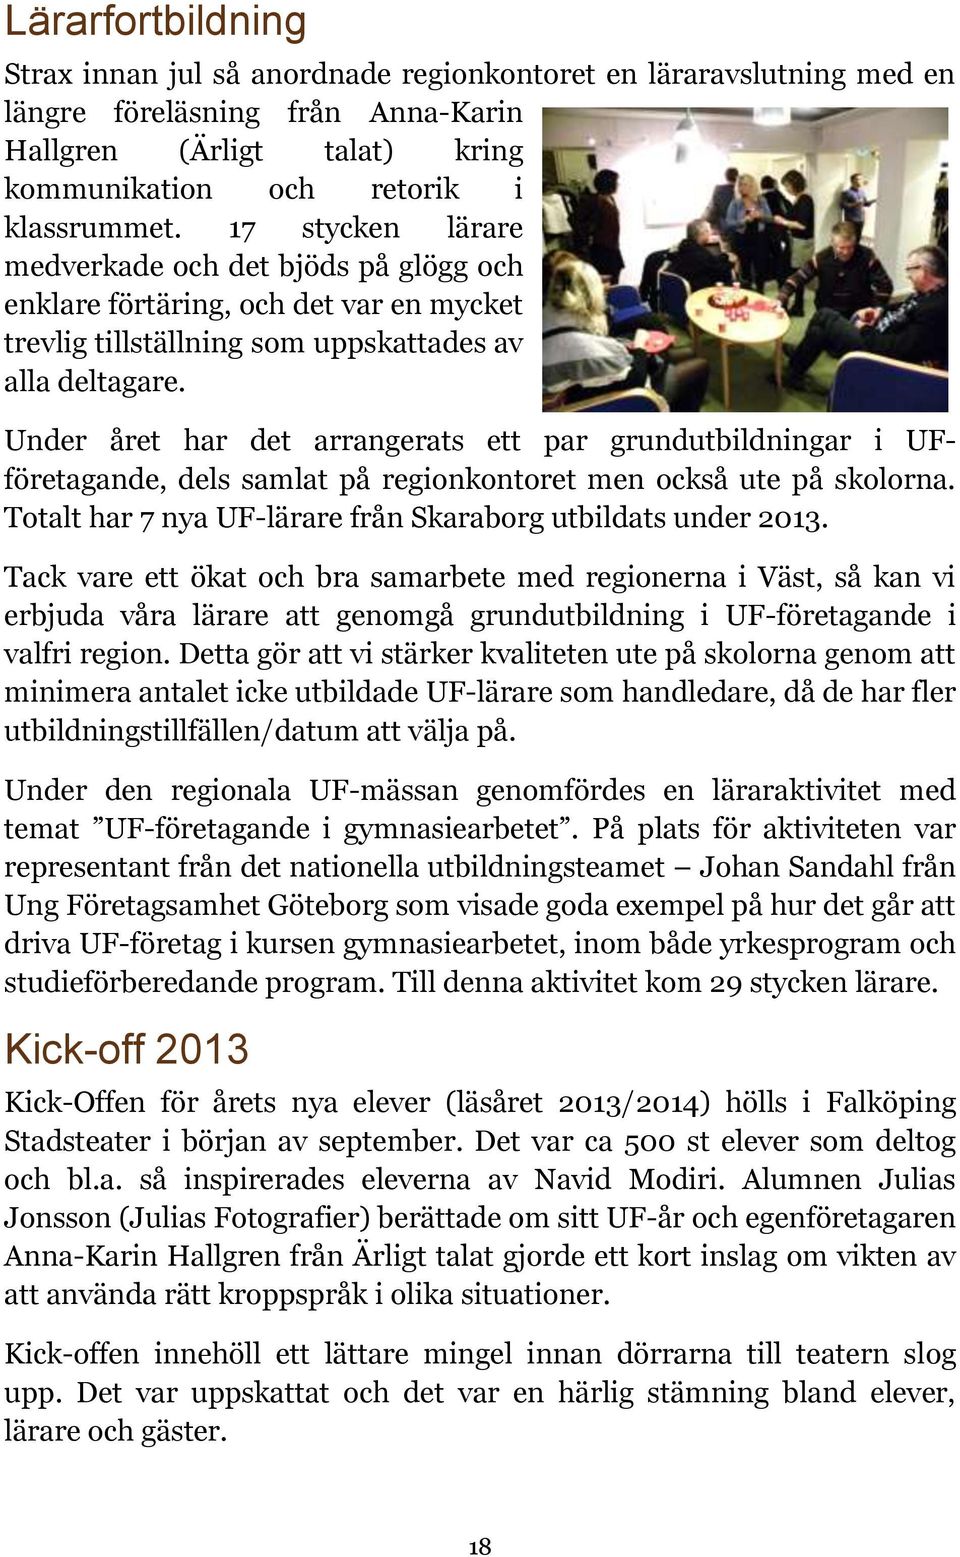 Under året har det arrangerats ett par grundutbildningar i UFföretagande, dels samlat på regionkontoret men också ute på skolorna. Totalt har 7 nya UF-lärare från Skaraborg utbildats under 2013.